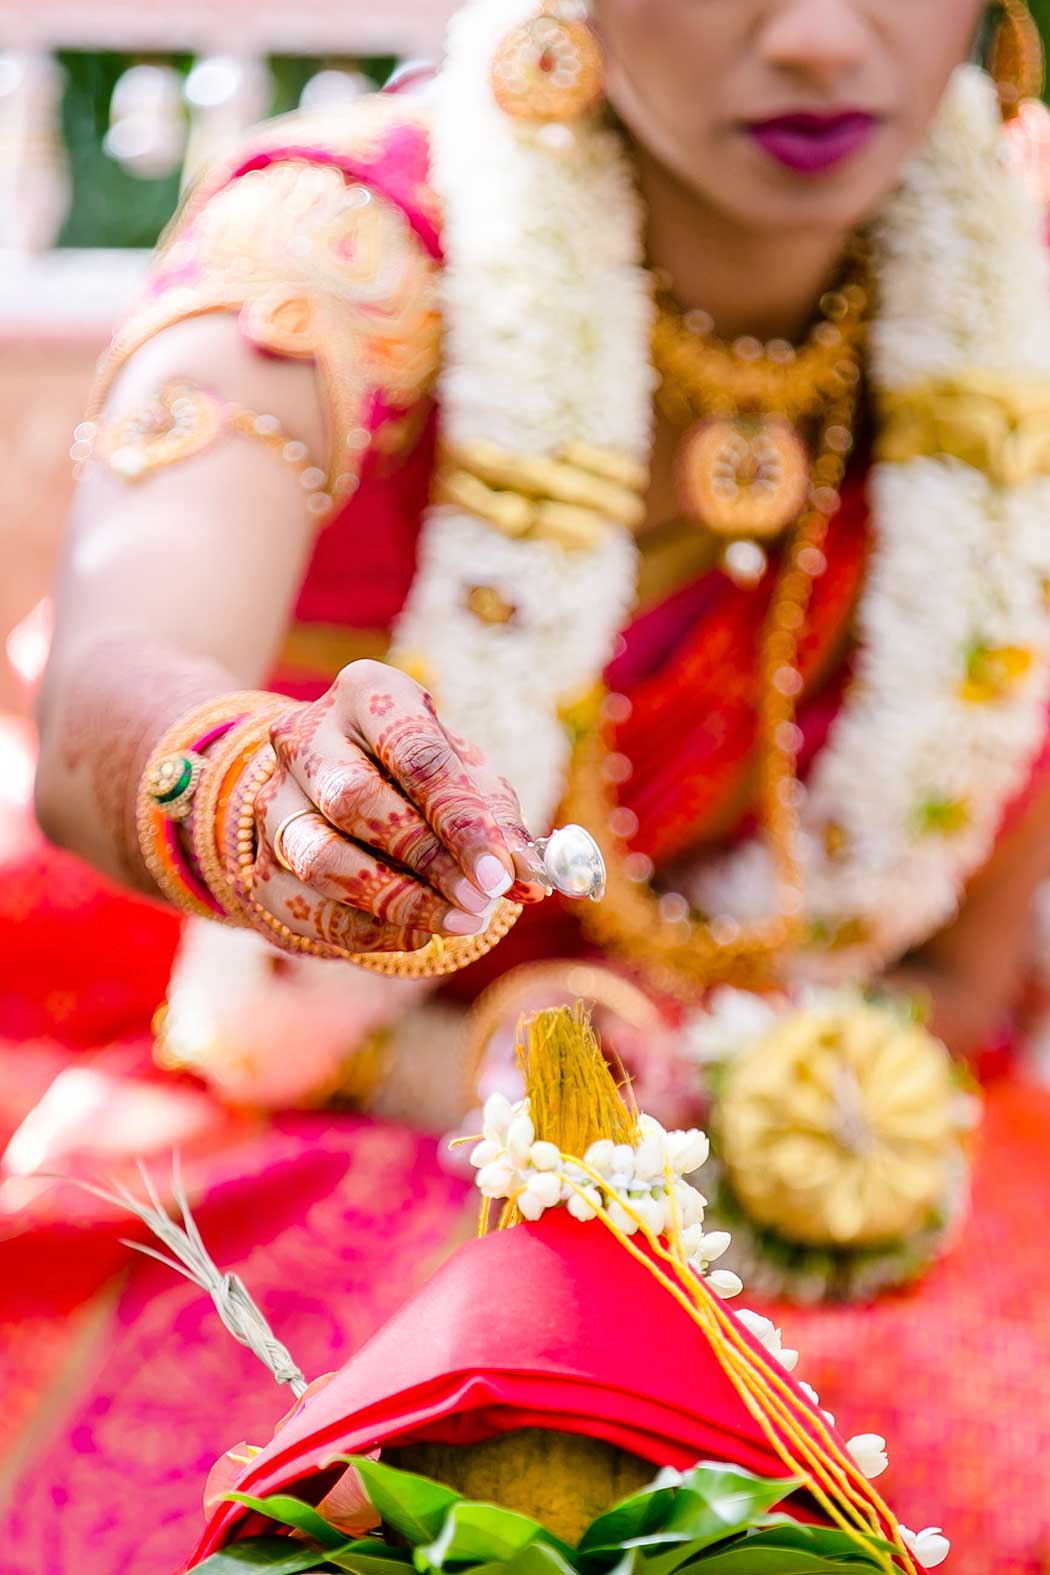 indian bride and groom get married in fort lauderdale bahia mar